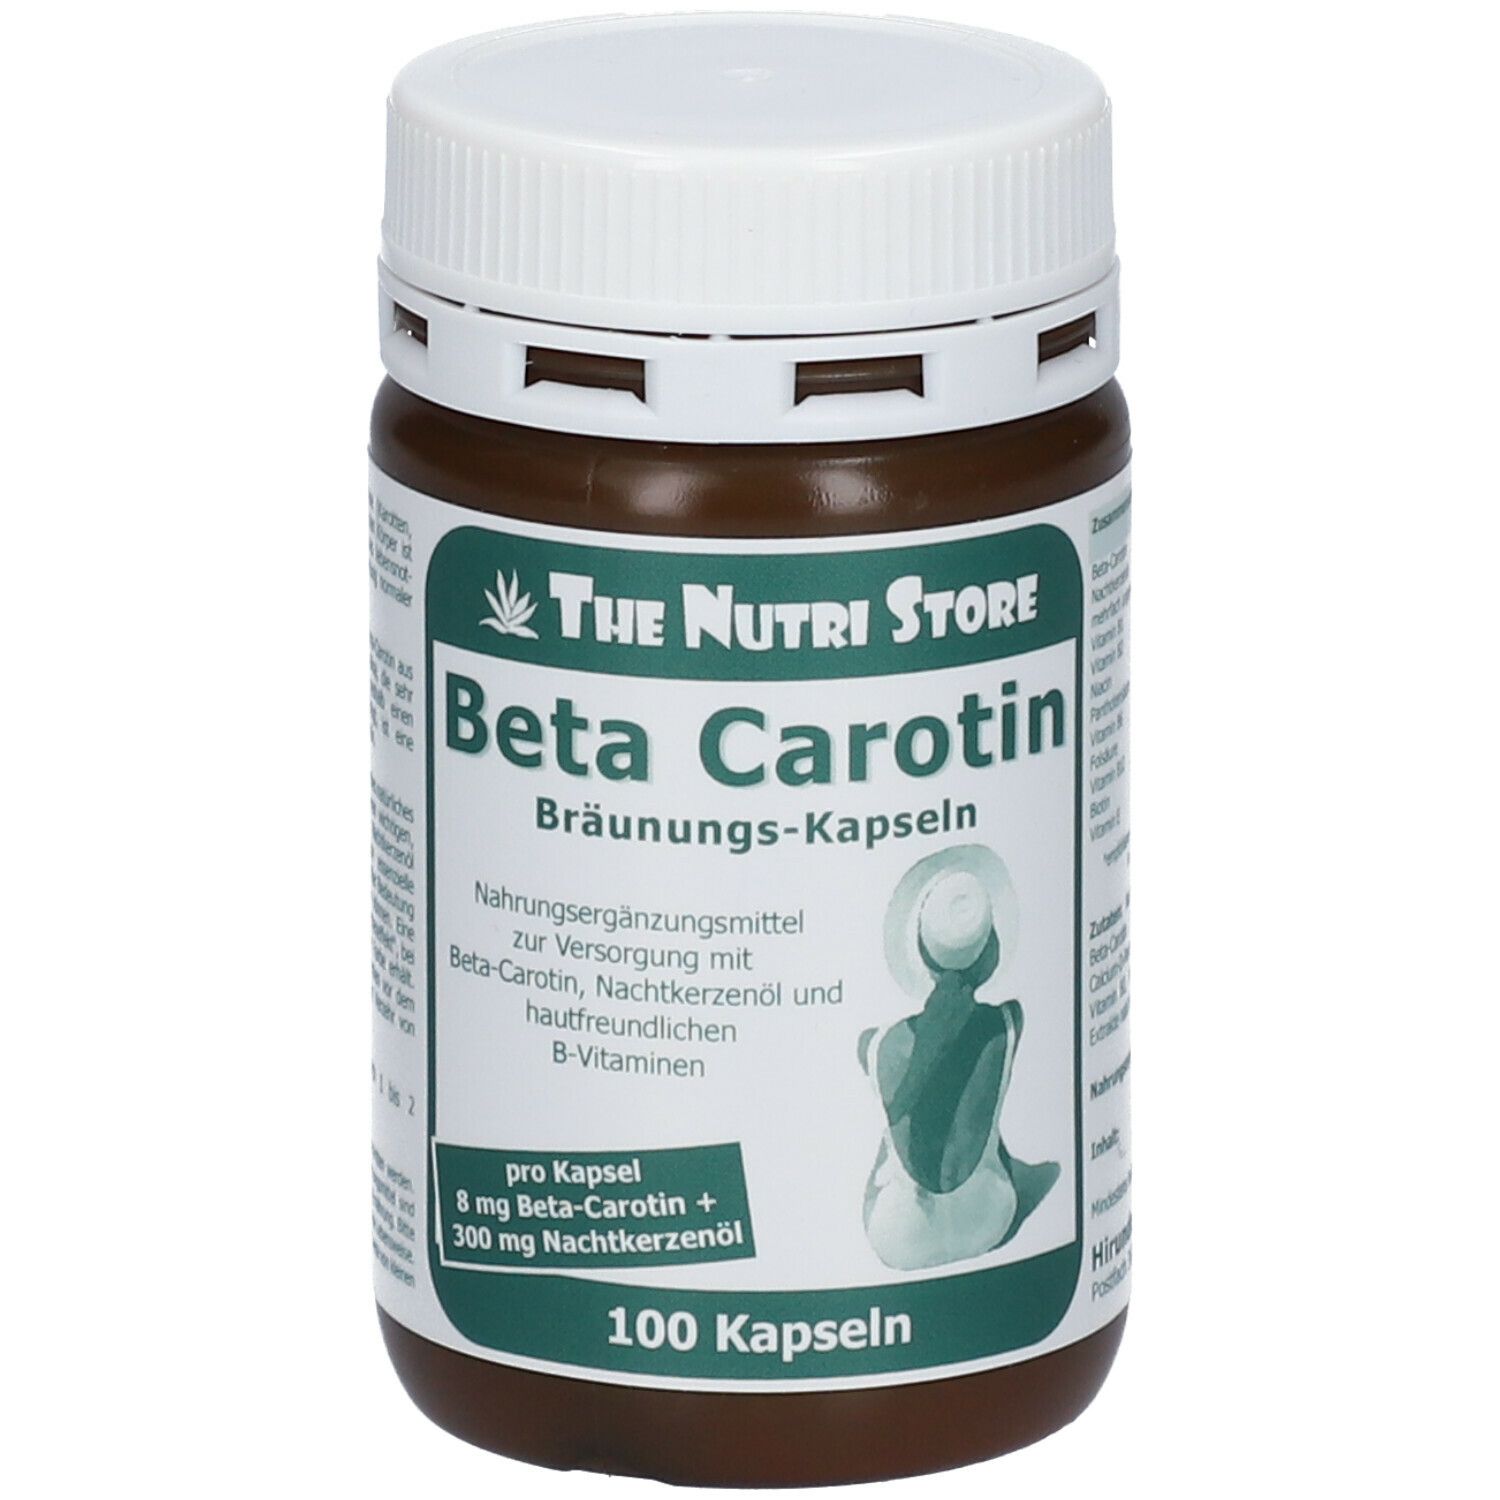 The Nutri Store Beta-Carotin 8 mg Bräunungskapseln